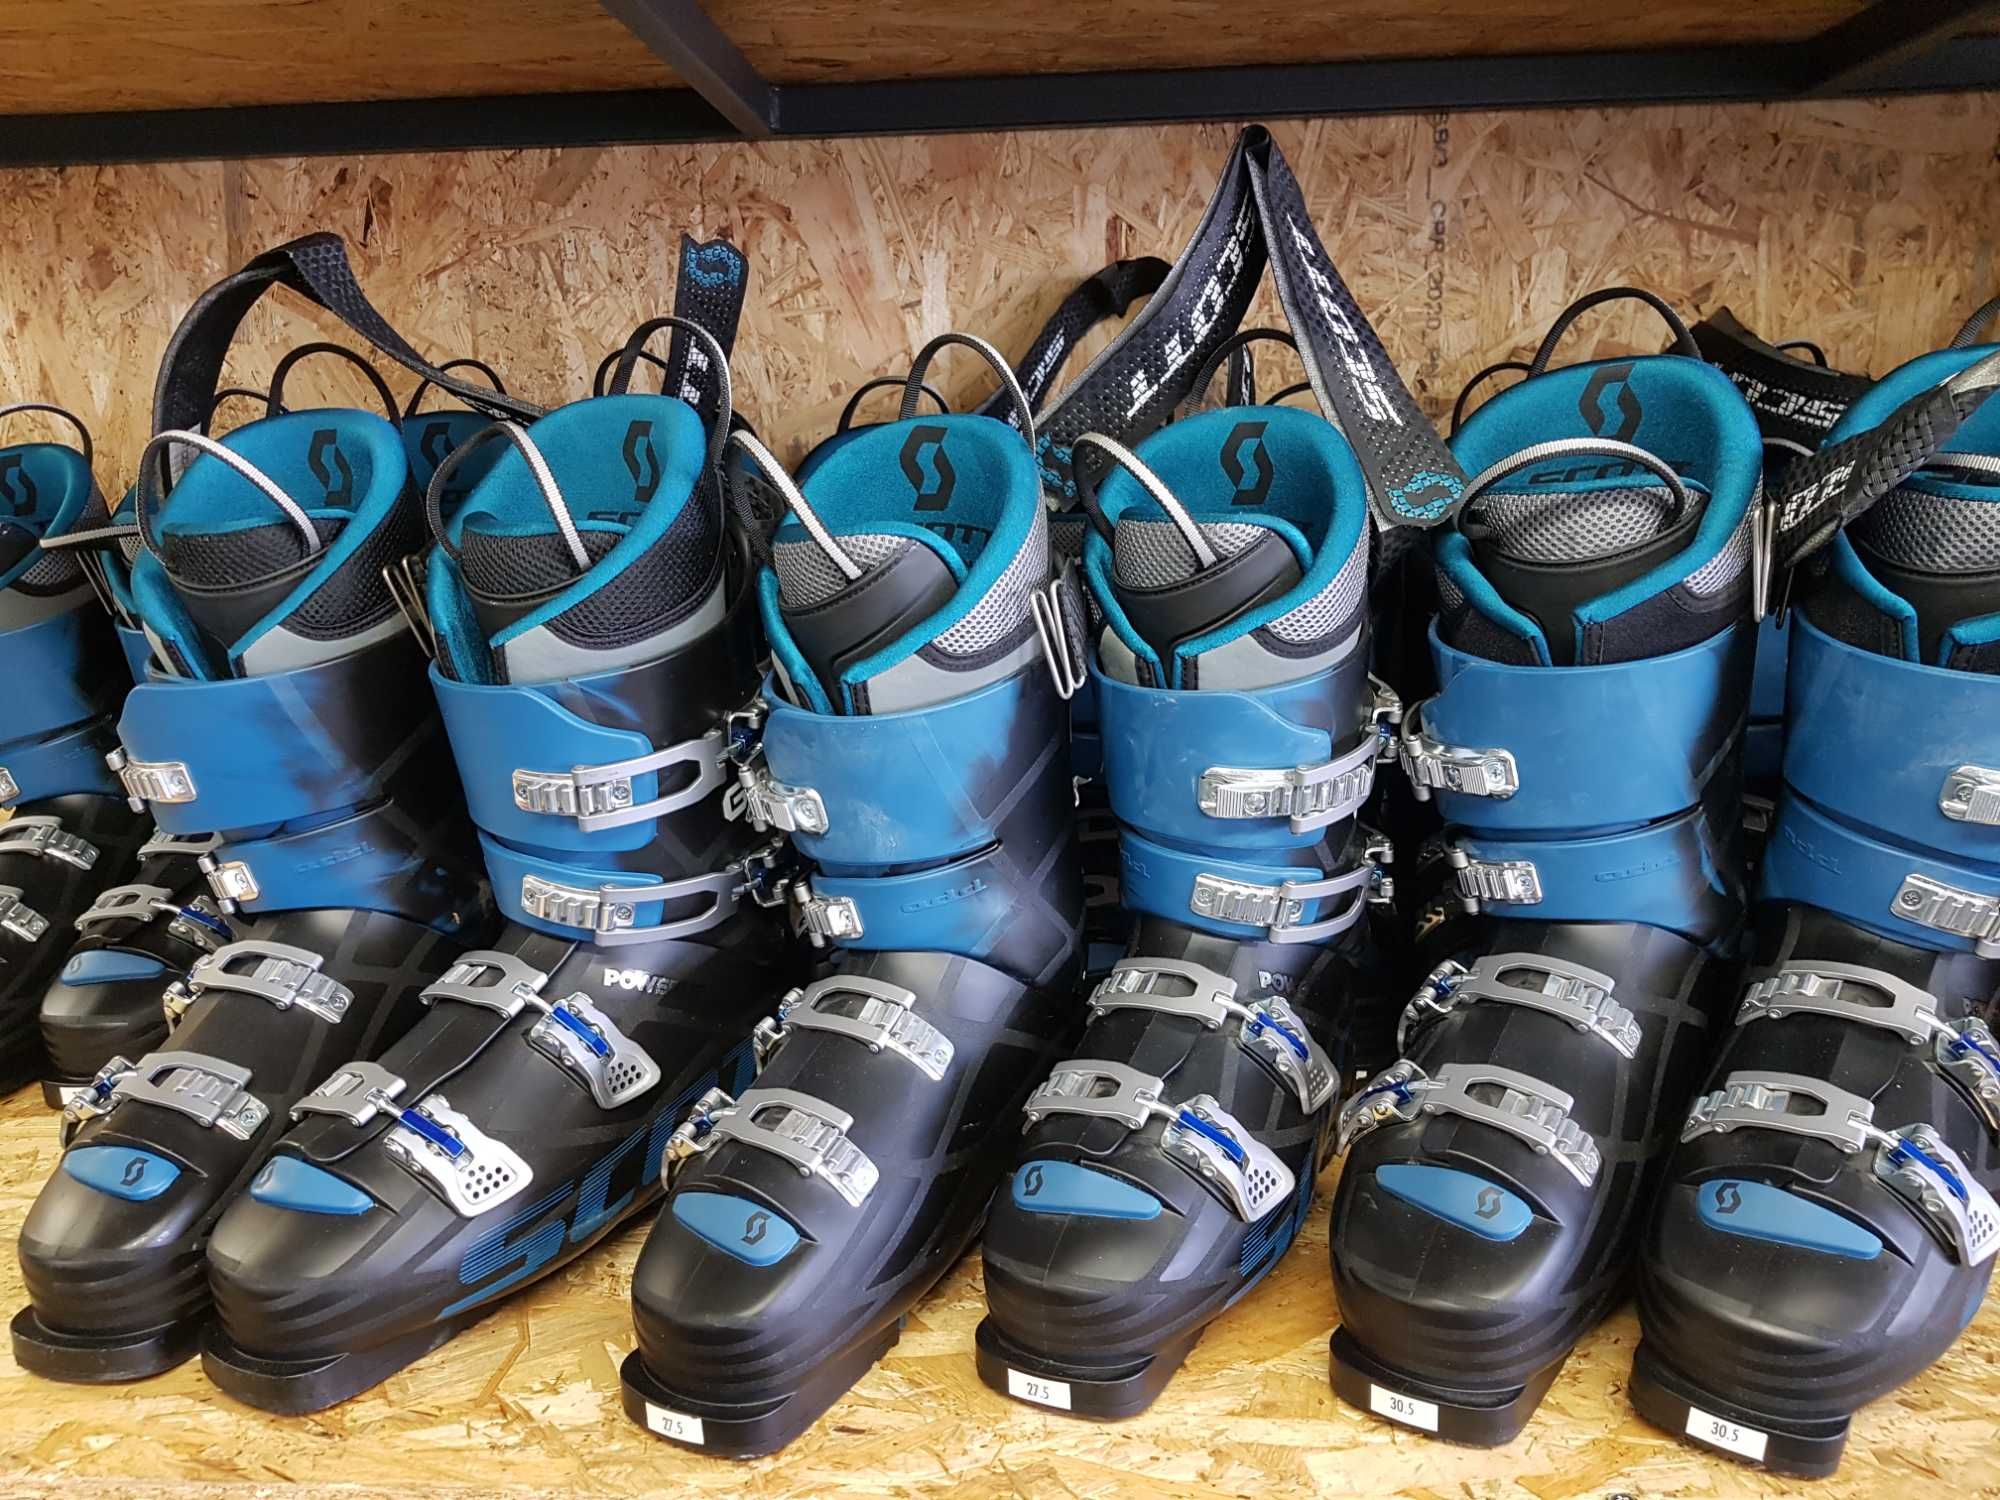 Nowe buty narciarskie Scott, 390 zł x 8 par, pakiet hurtowy nr 86